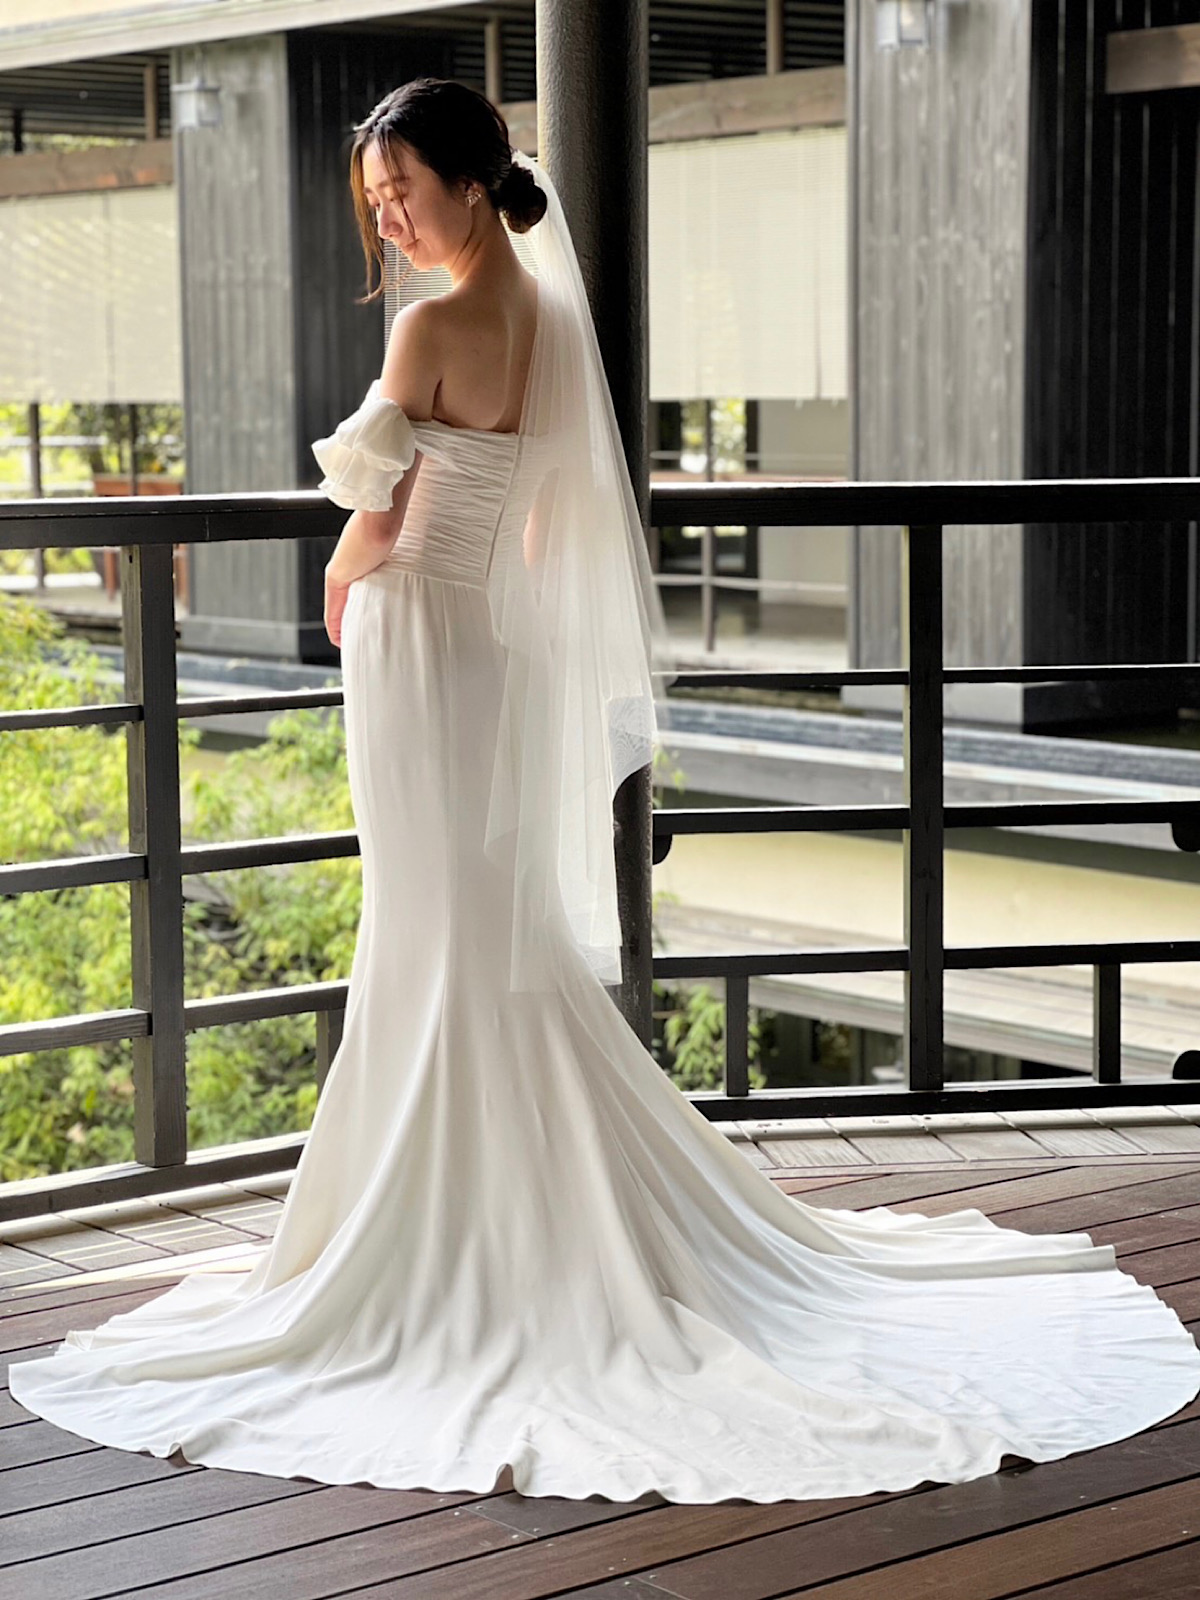 名古屋で人気の結婚式会場、ザ カワブンナゴヤにぴったりのシルエットが美しいマーメイドラインのウェディングドレス